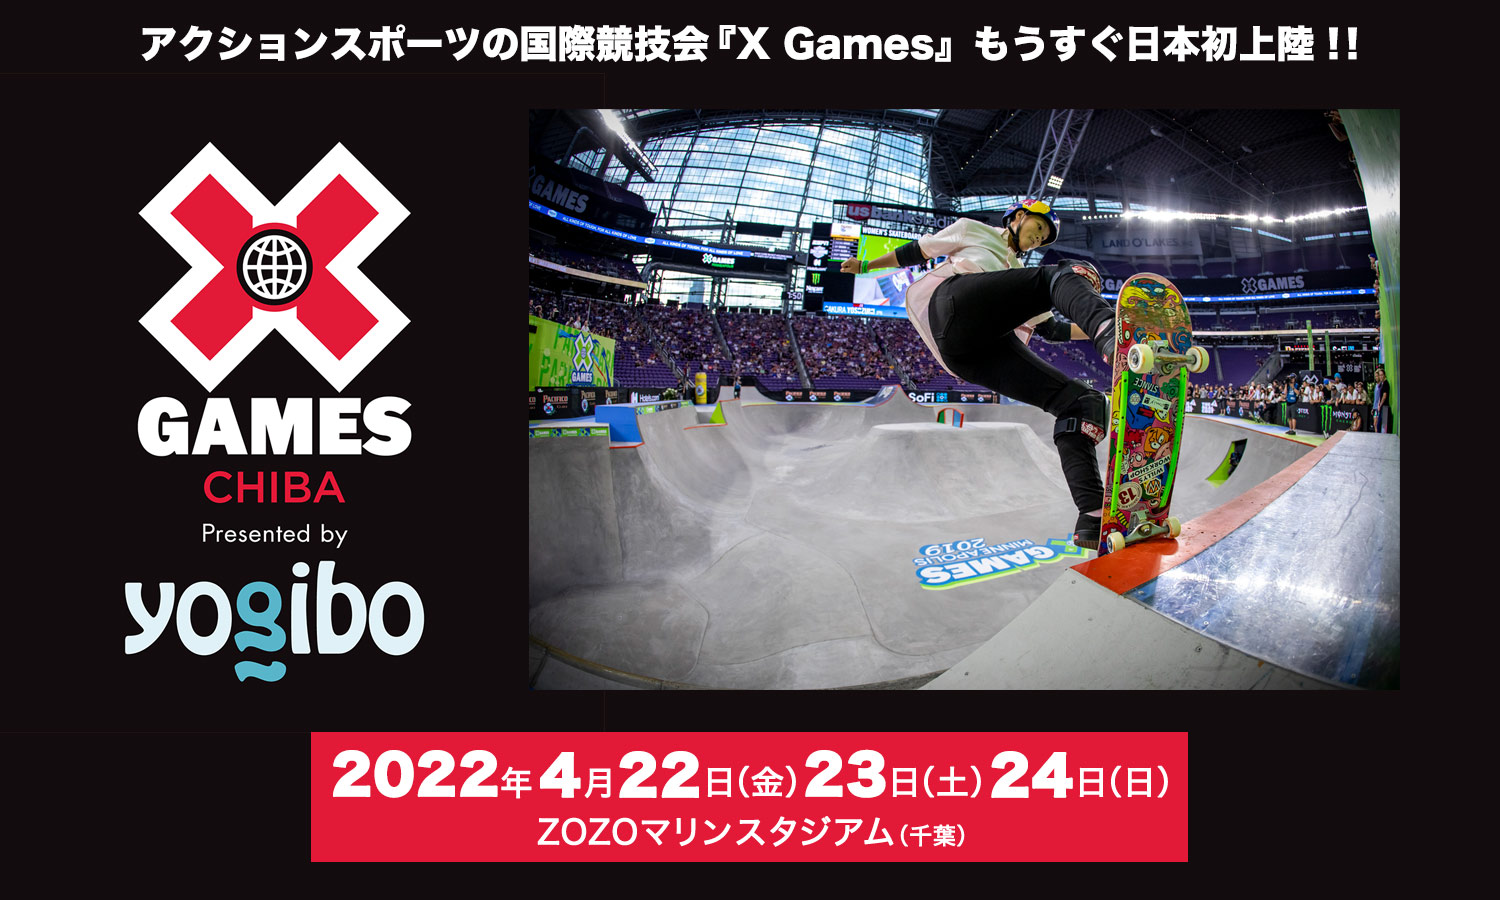 アクションスポーツの国際競技会『X Games』日本初上陸！4月22日(金)、23日(土)、24日(日)、ZOZOマリンスタジアム(千葉市)で開催！